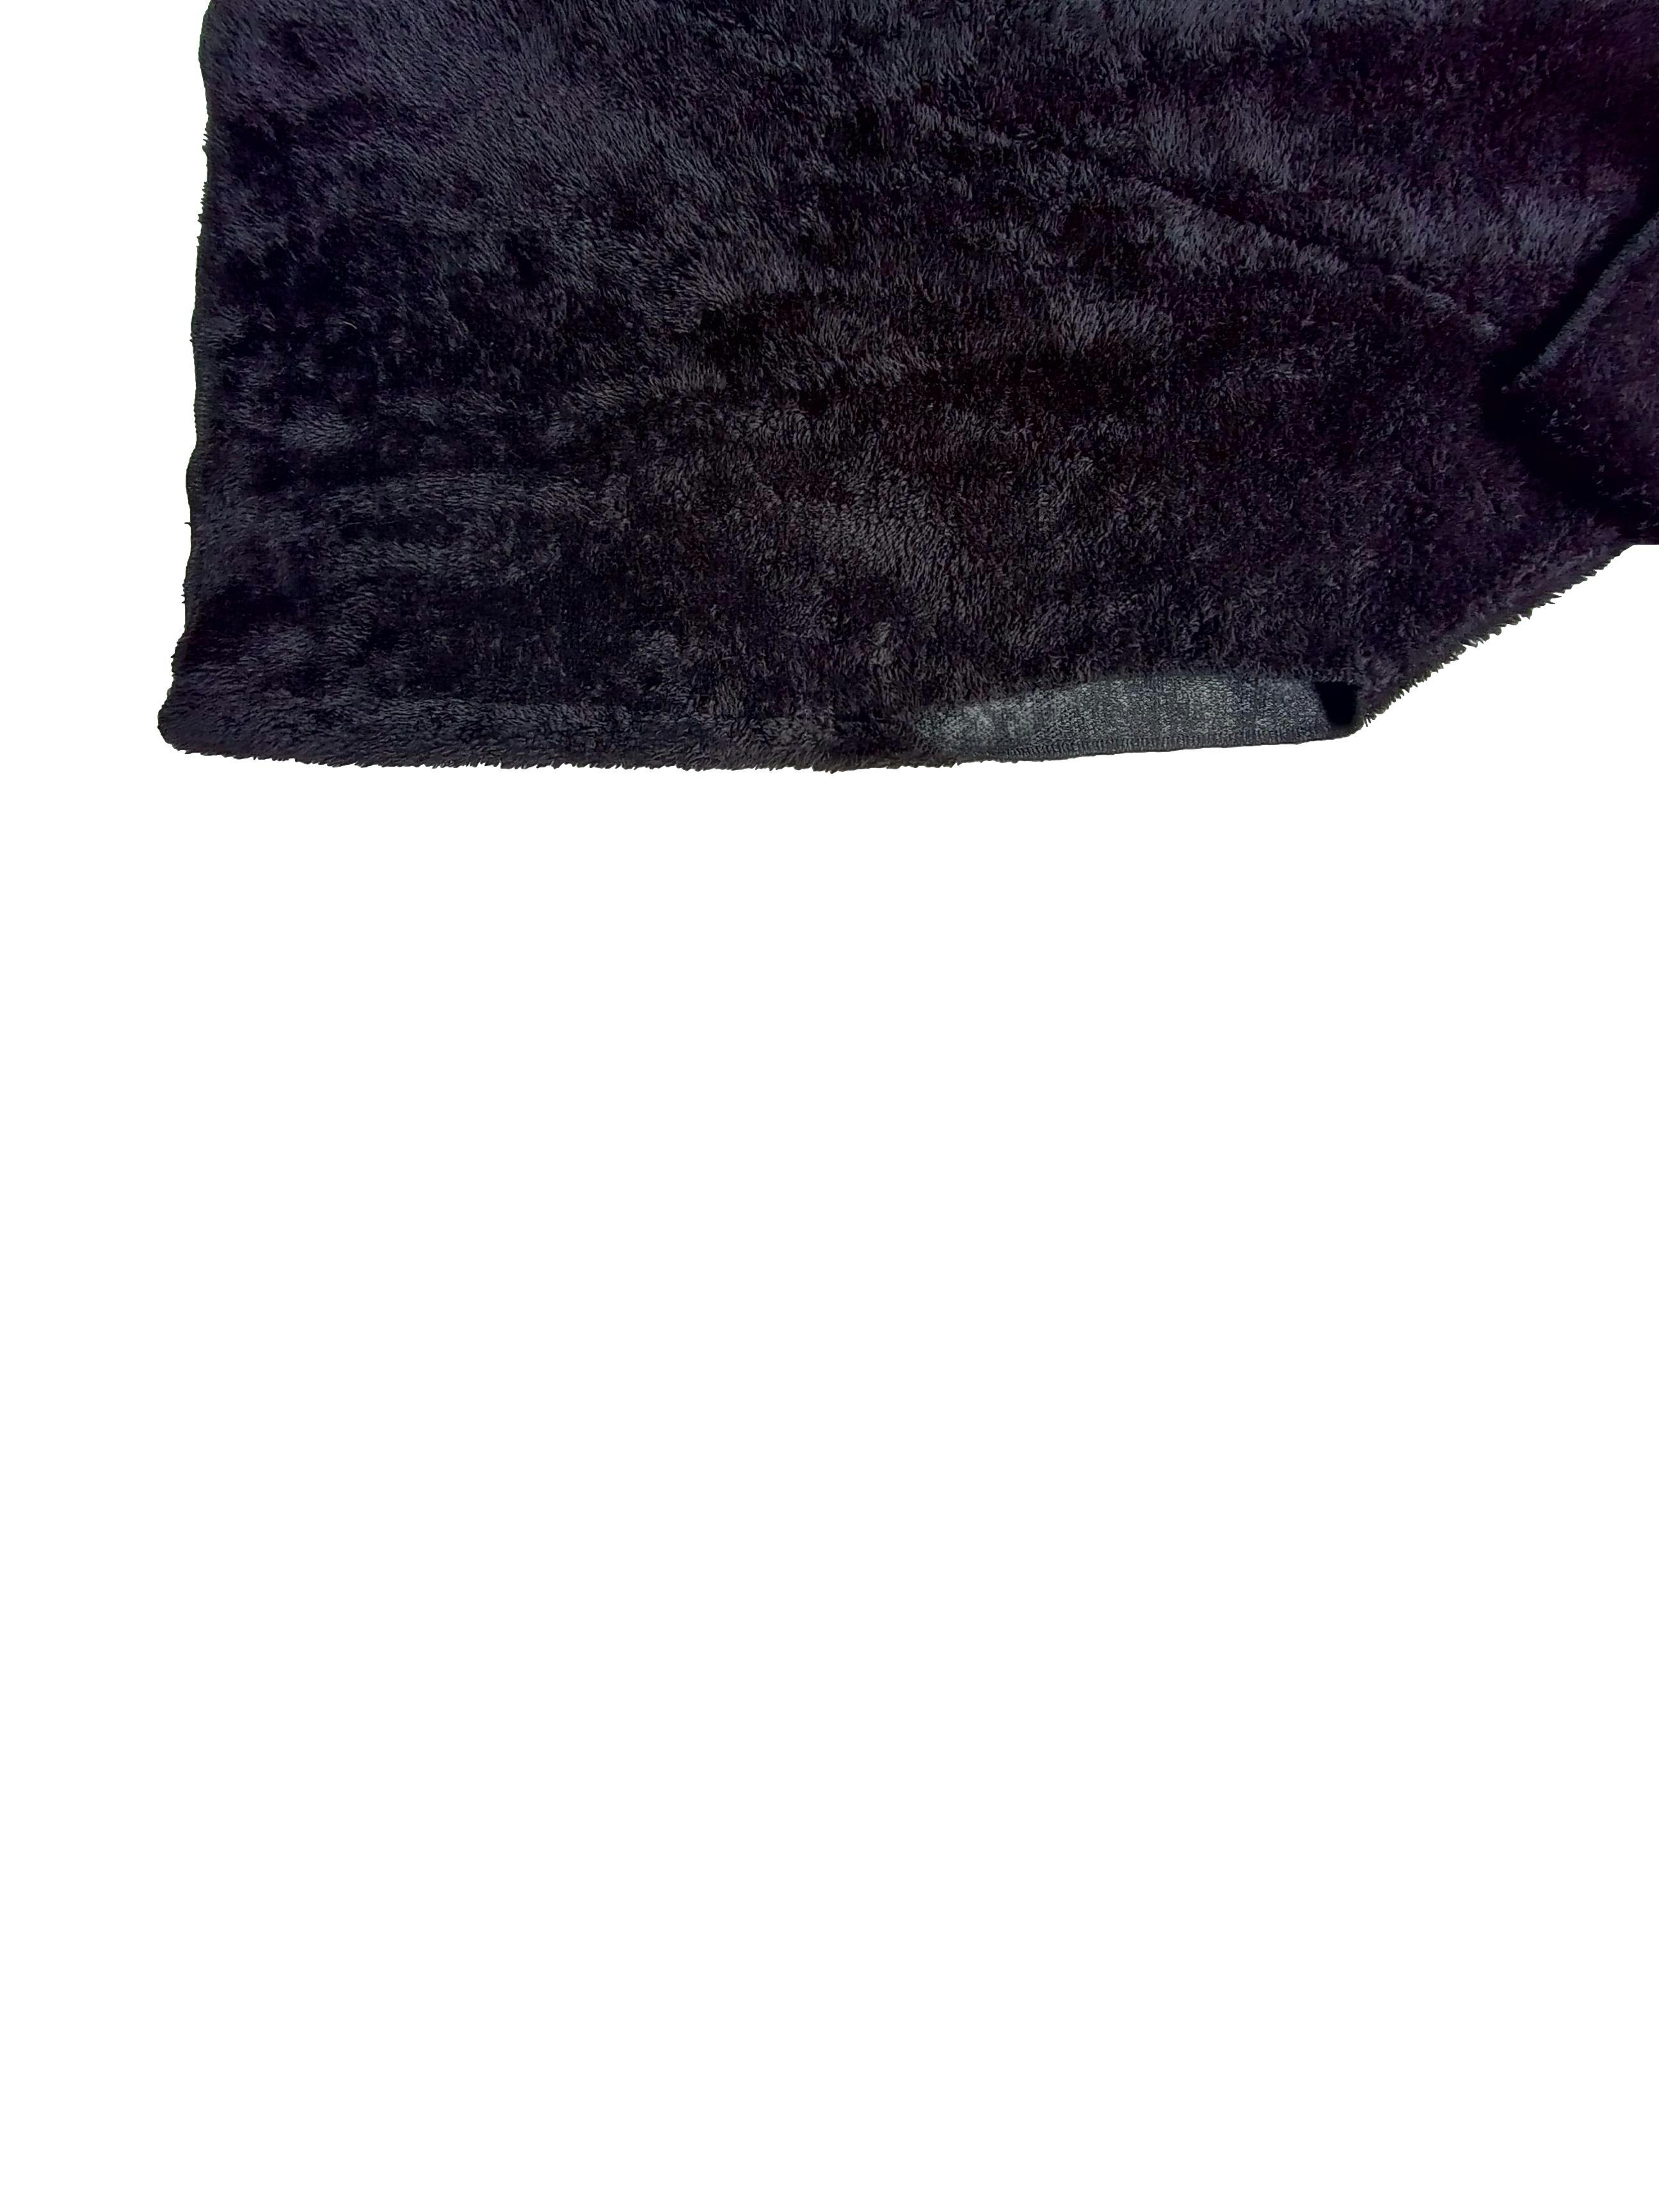 Poncho negro de peluche abertura para brazos, cinto en cuello. Busto 150 cm. Largo 73 cm. 